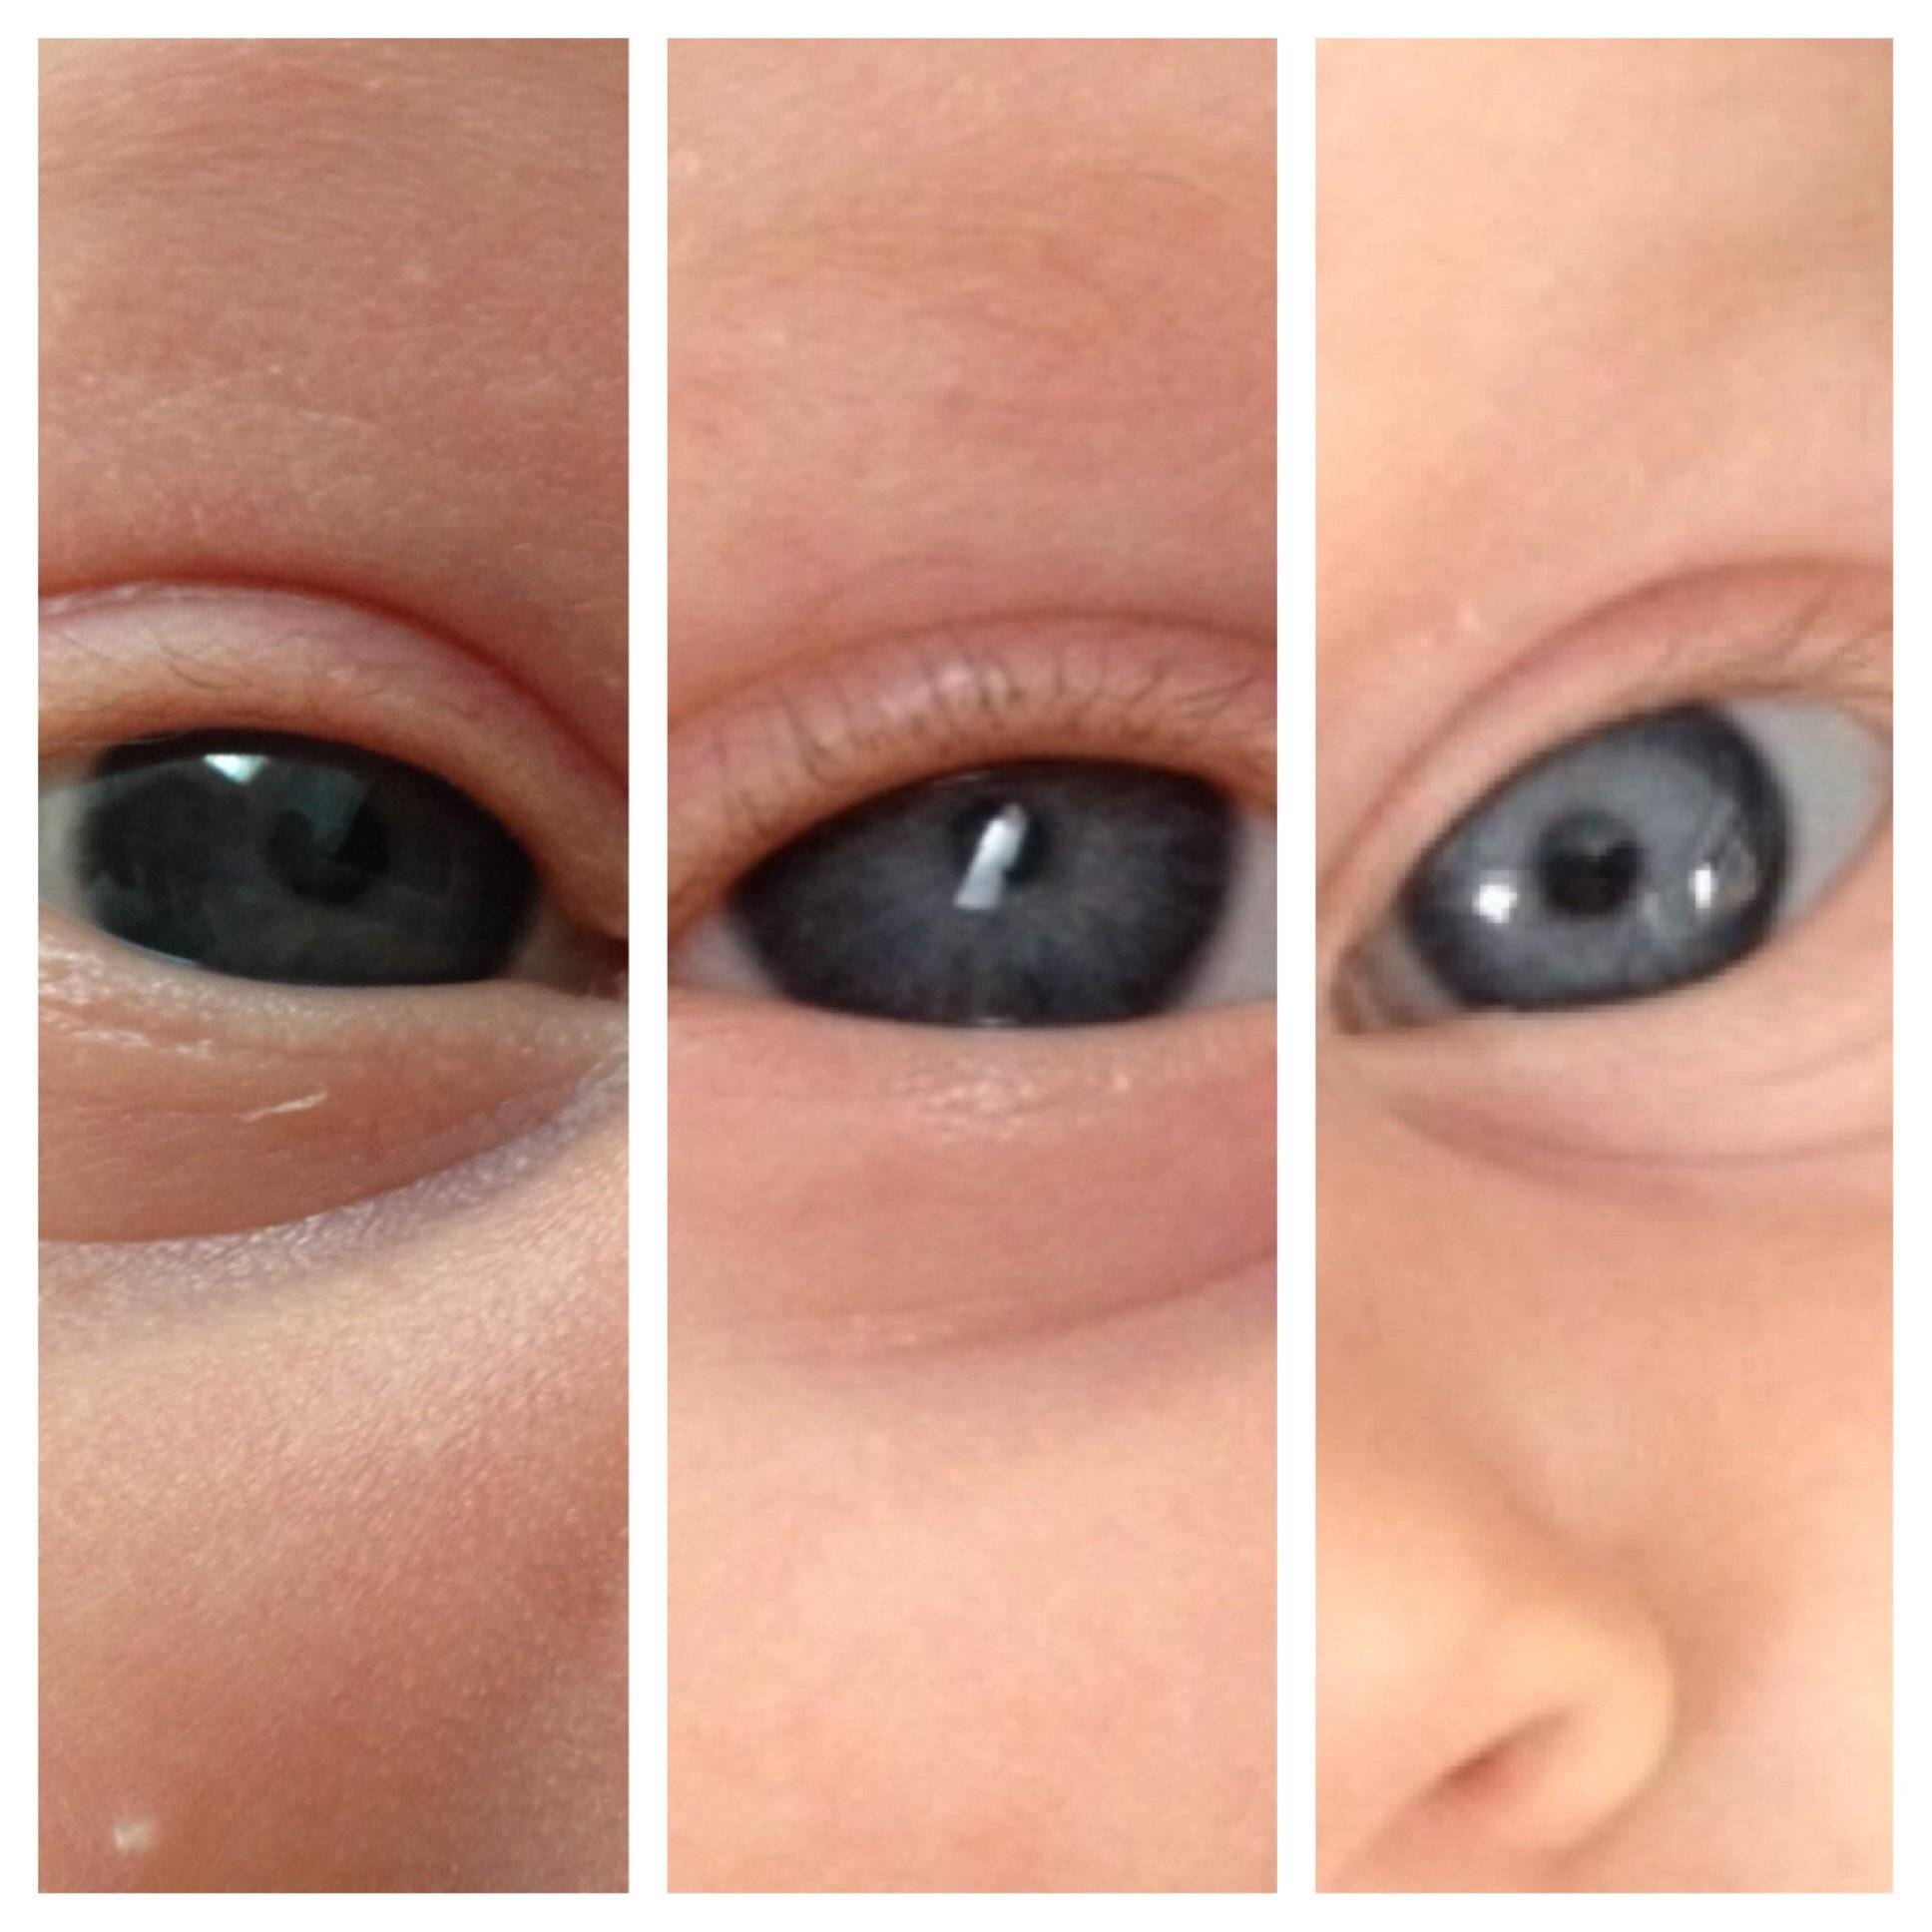 Когда и почему у ребенка меняется цвет глаз